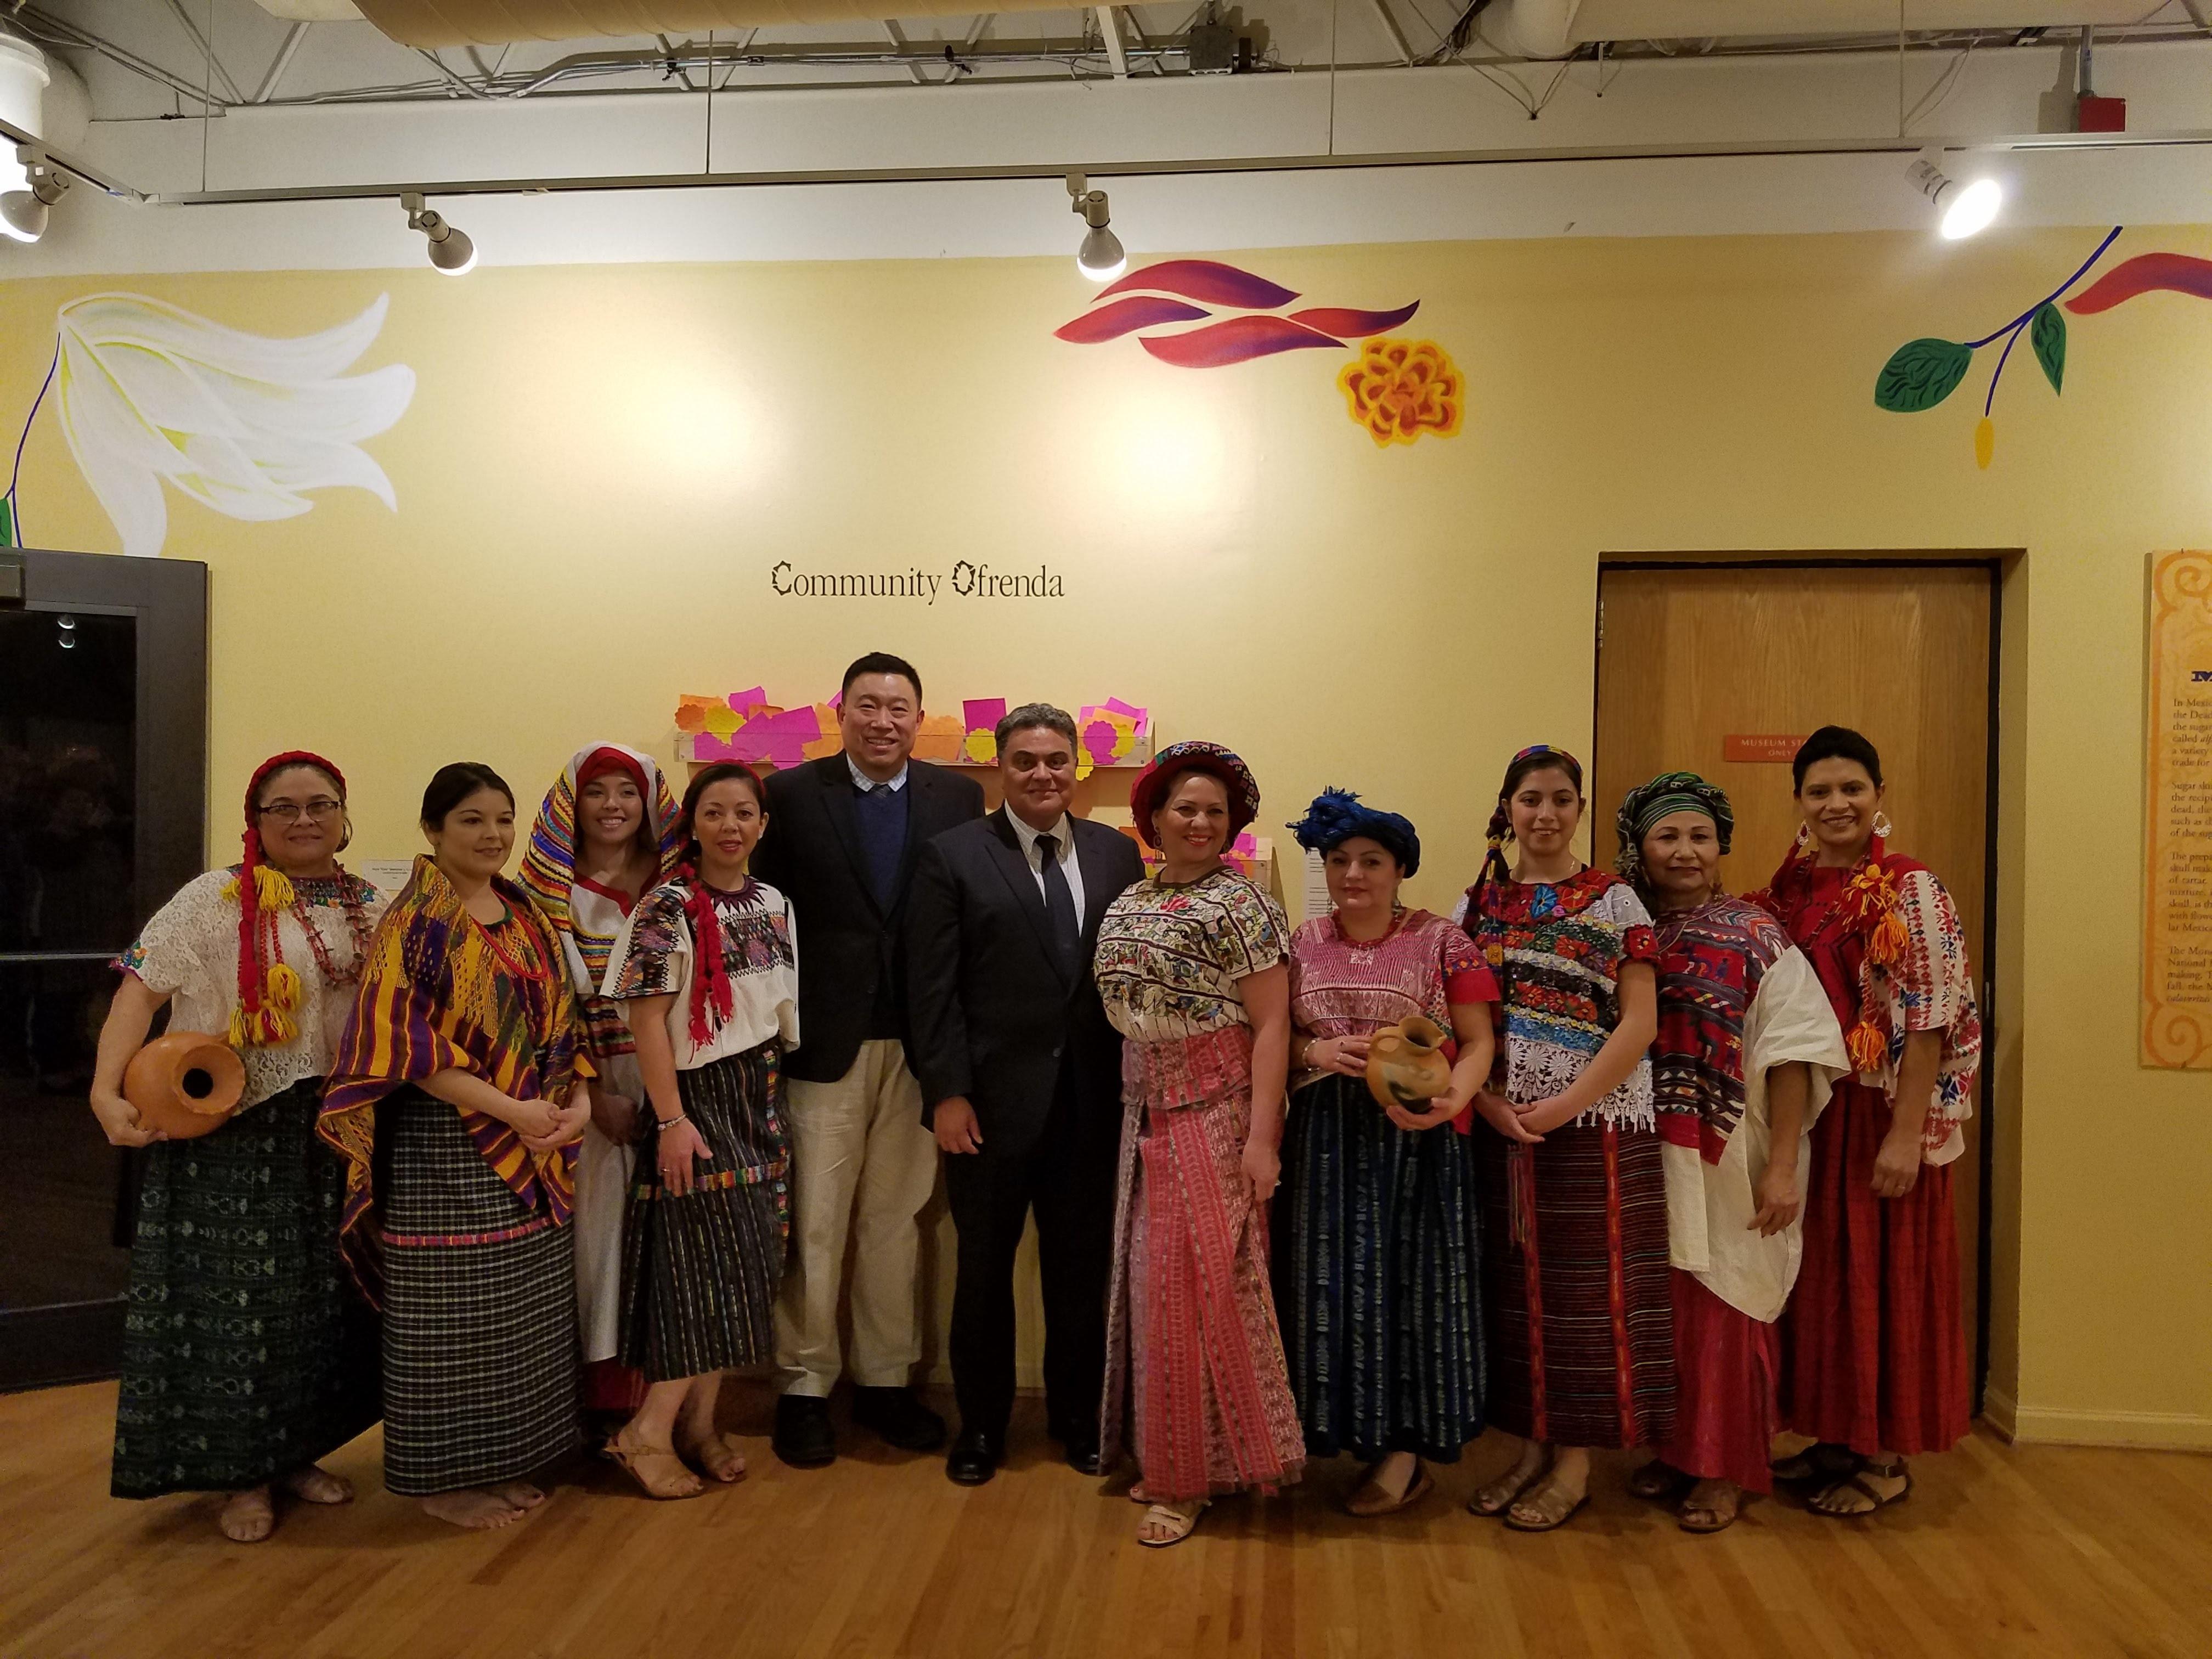 張組長志強與瓜國總領事Nelson Rafael Olivero及展示傳統服飾的佳麗們合影